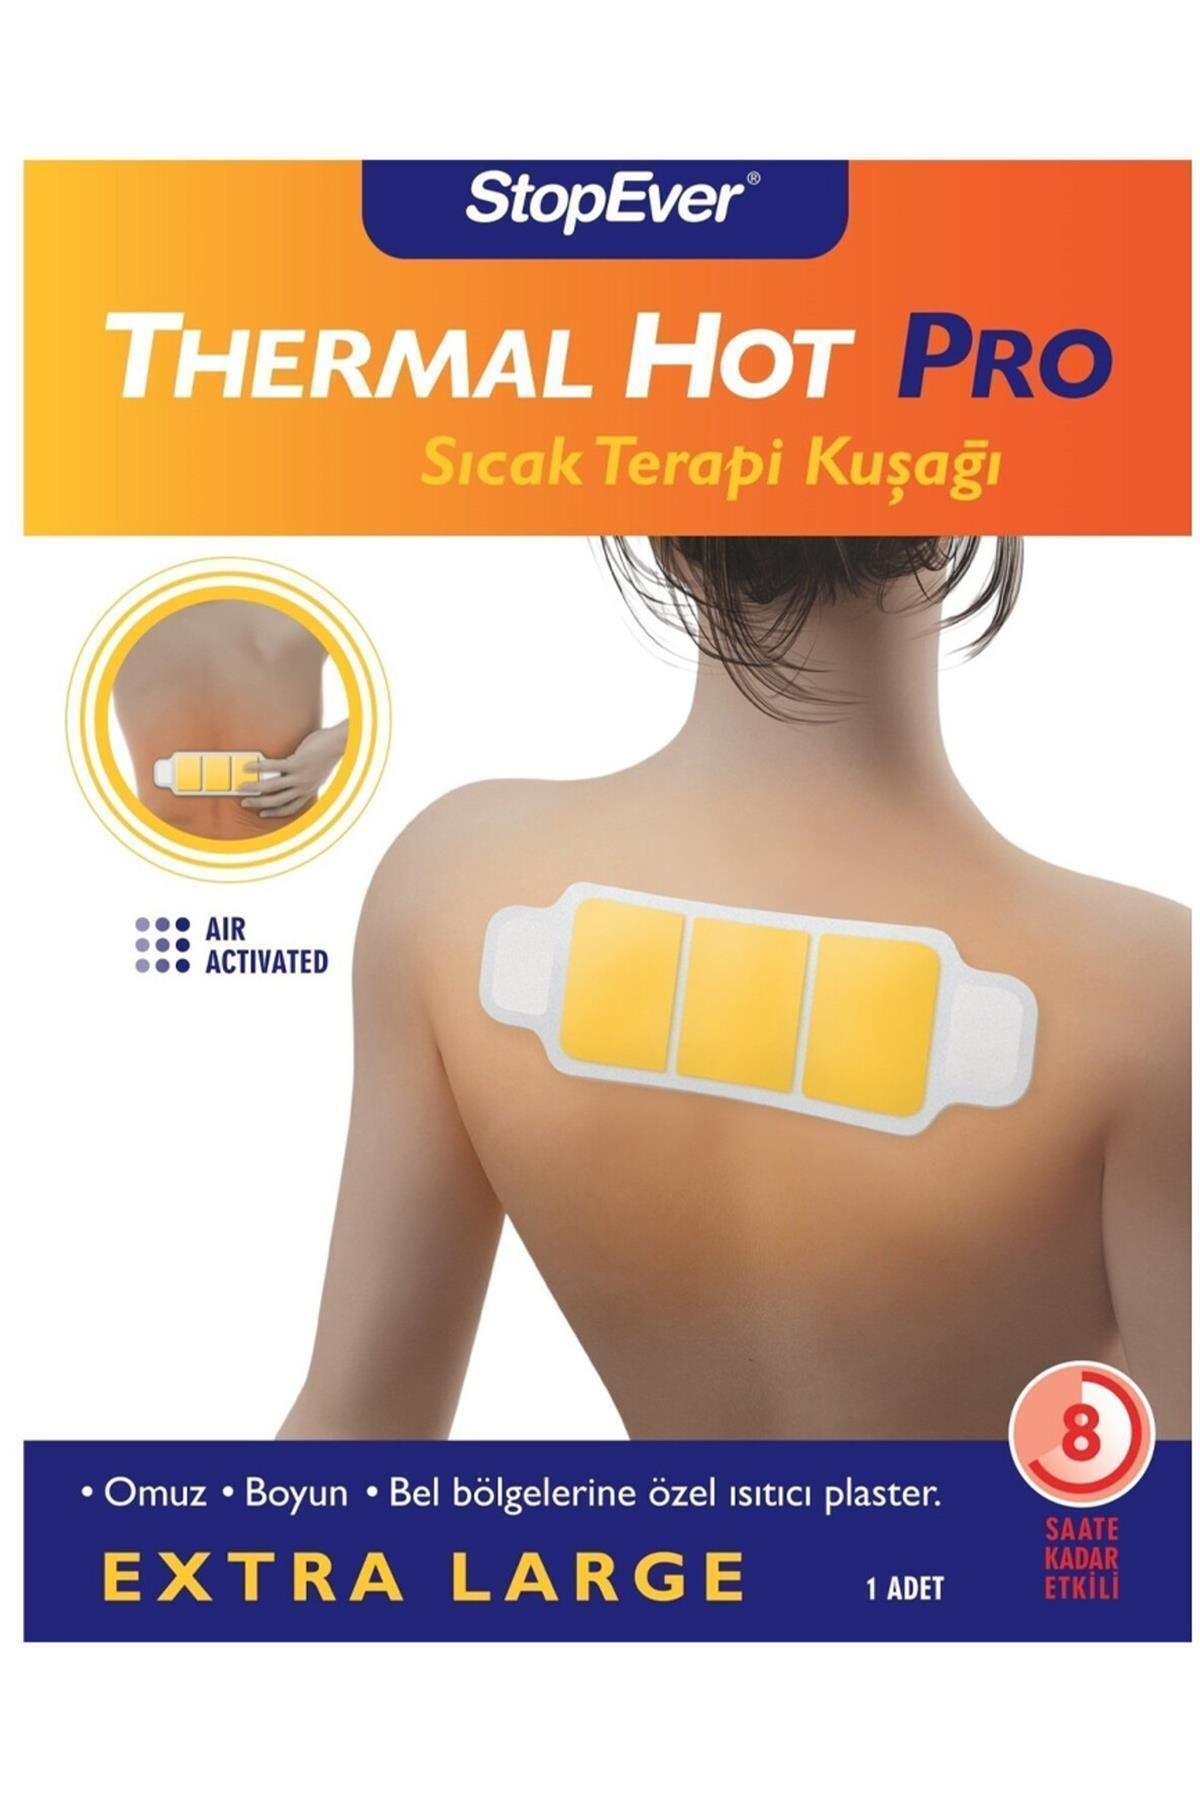 StopEver Marka: Thermalhot Pro Sıcak Terapi Kuşağı Kategori: Diğer Sağlık Ürünleri